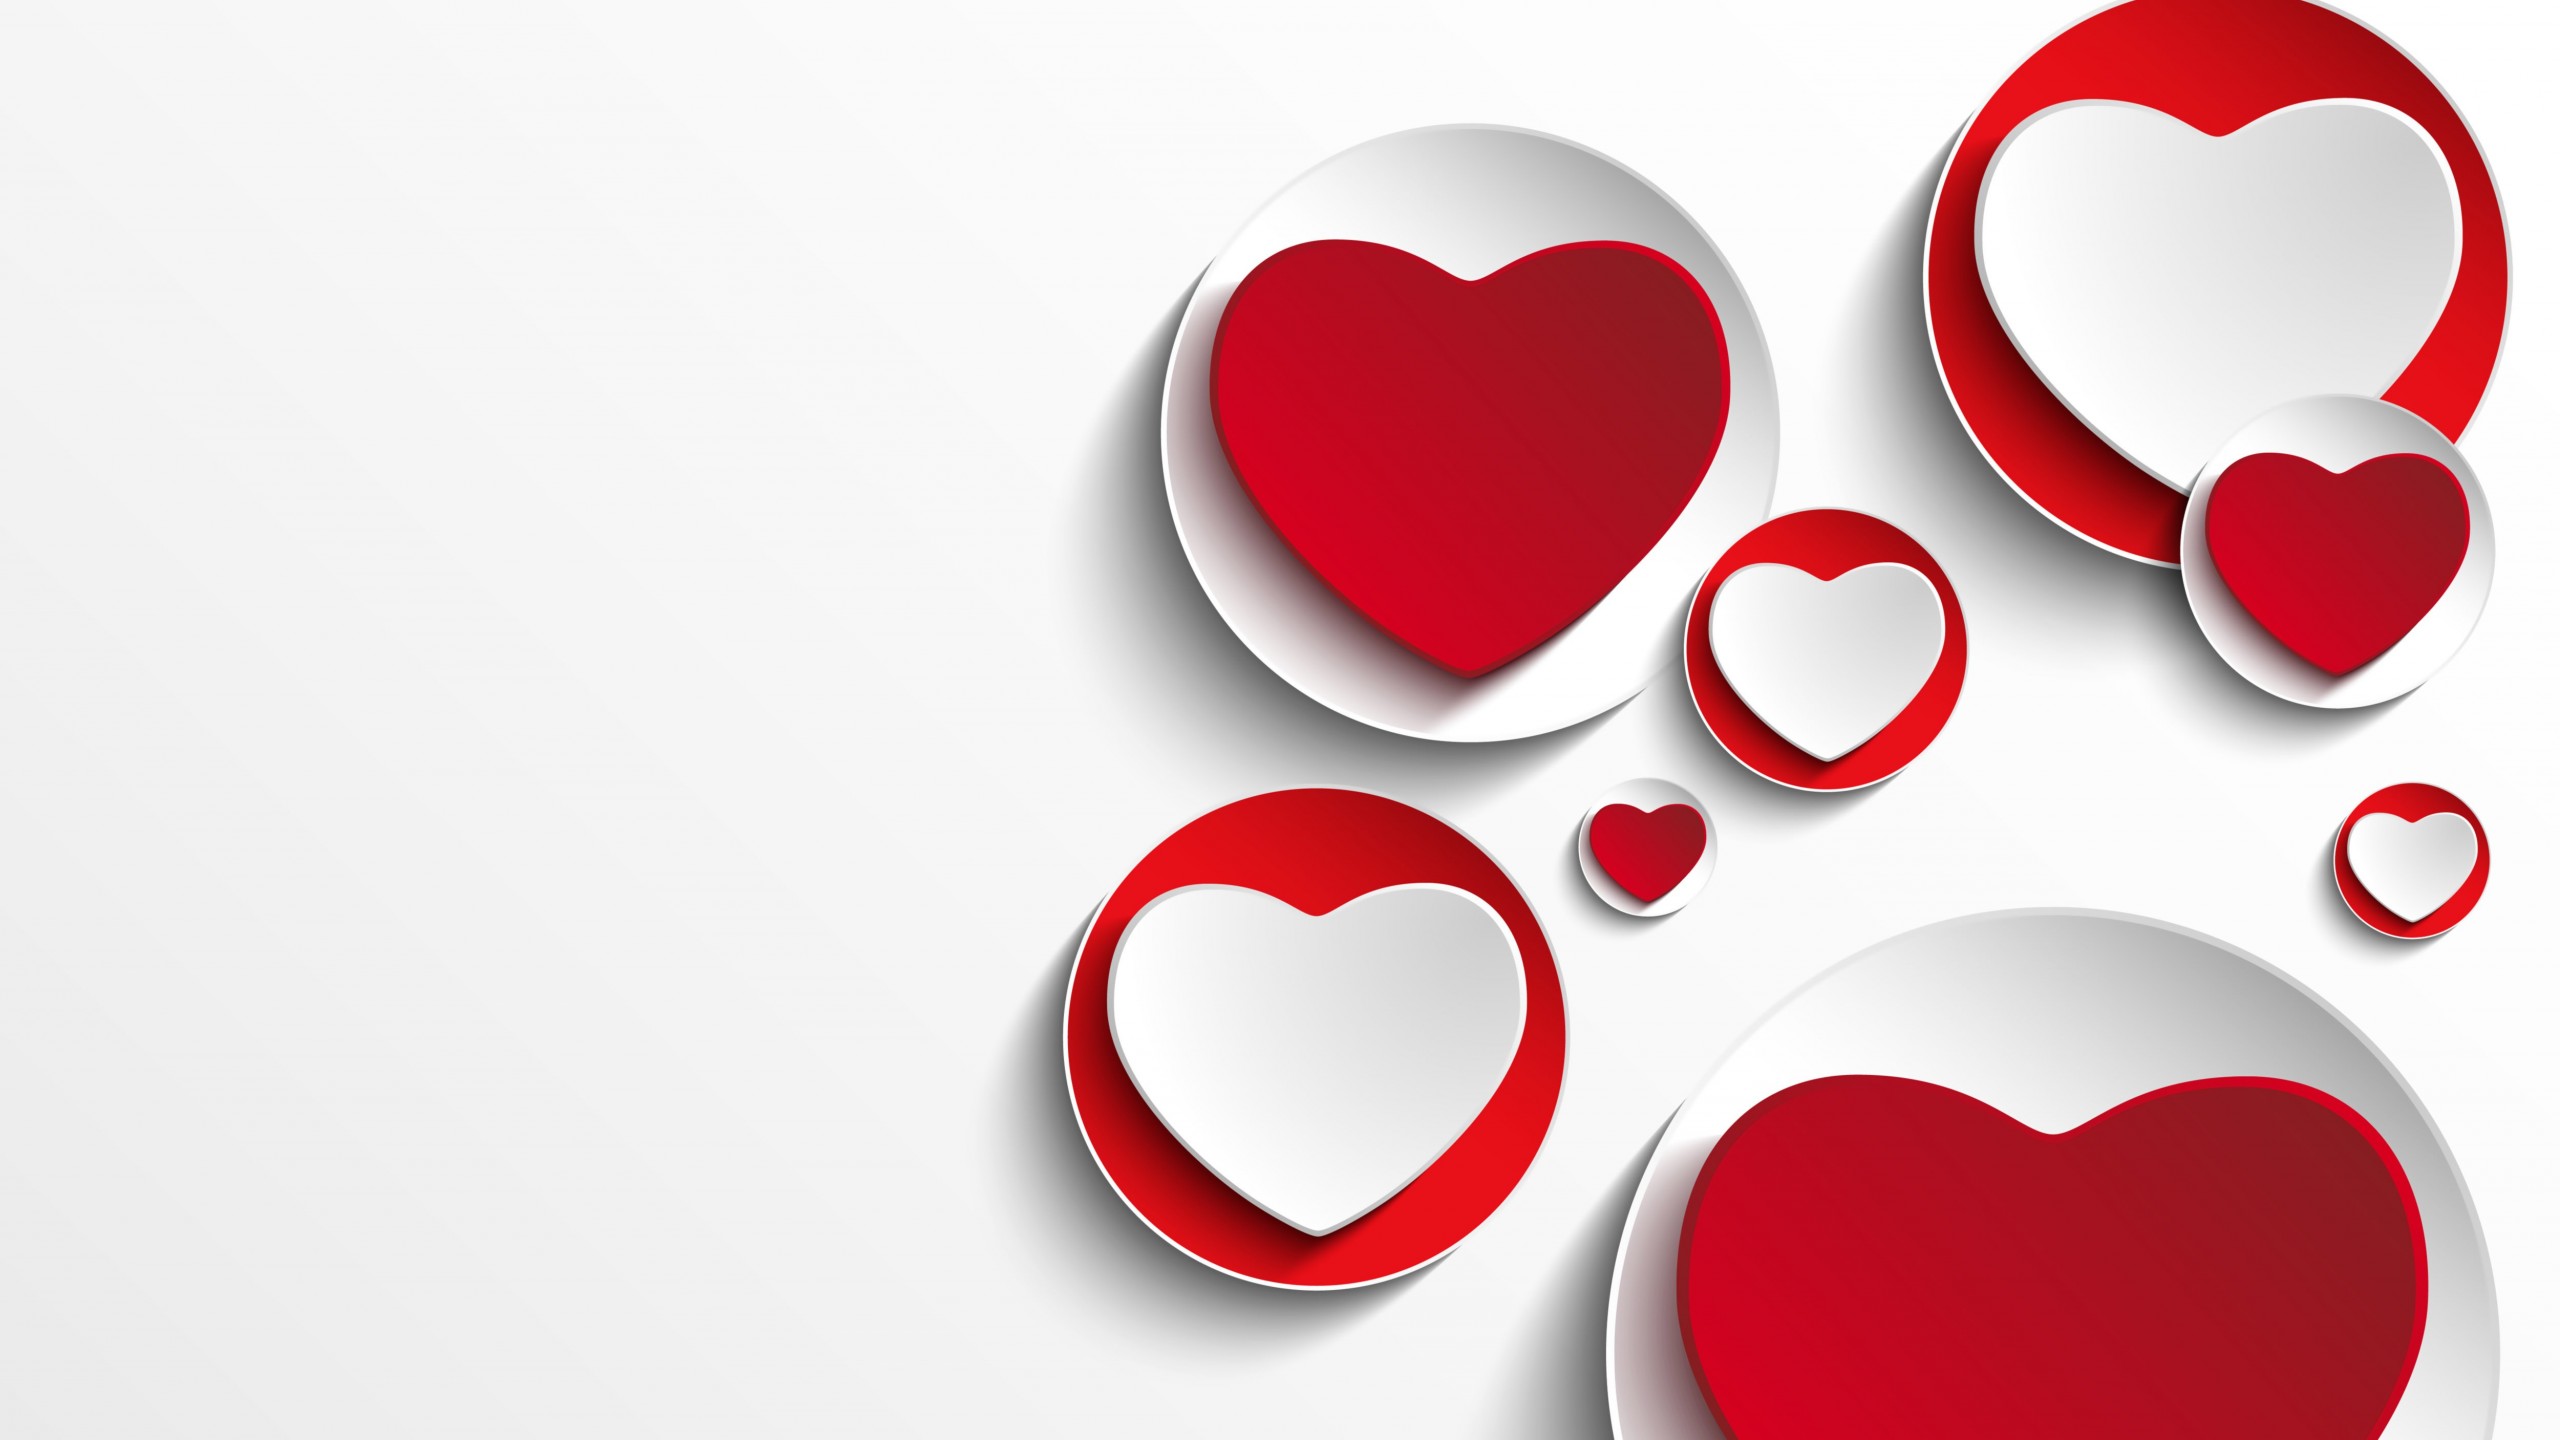 Minimalistic Hearts Shapes Wallpaper for Desktop 2560x1440